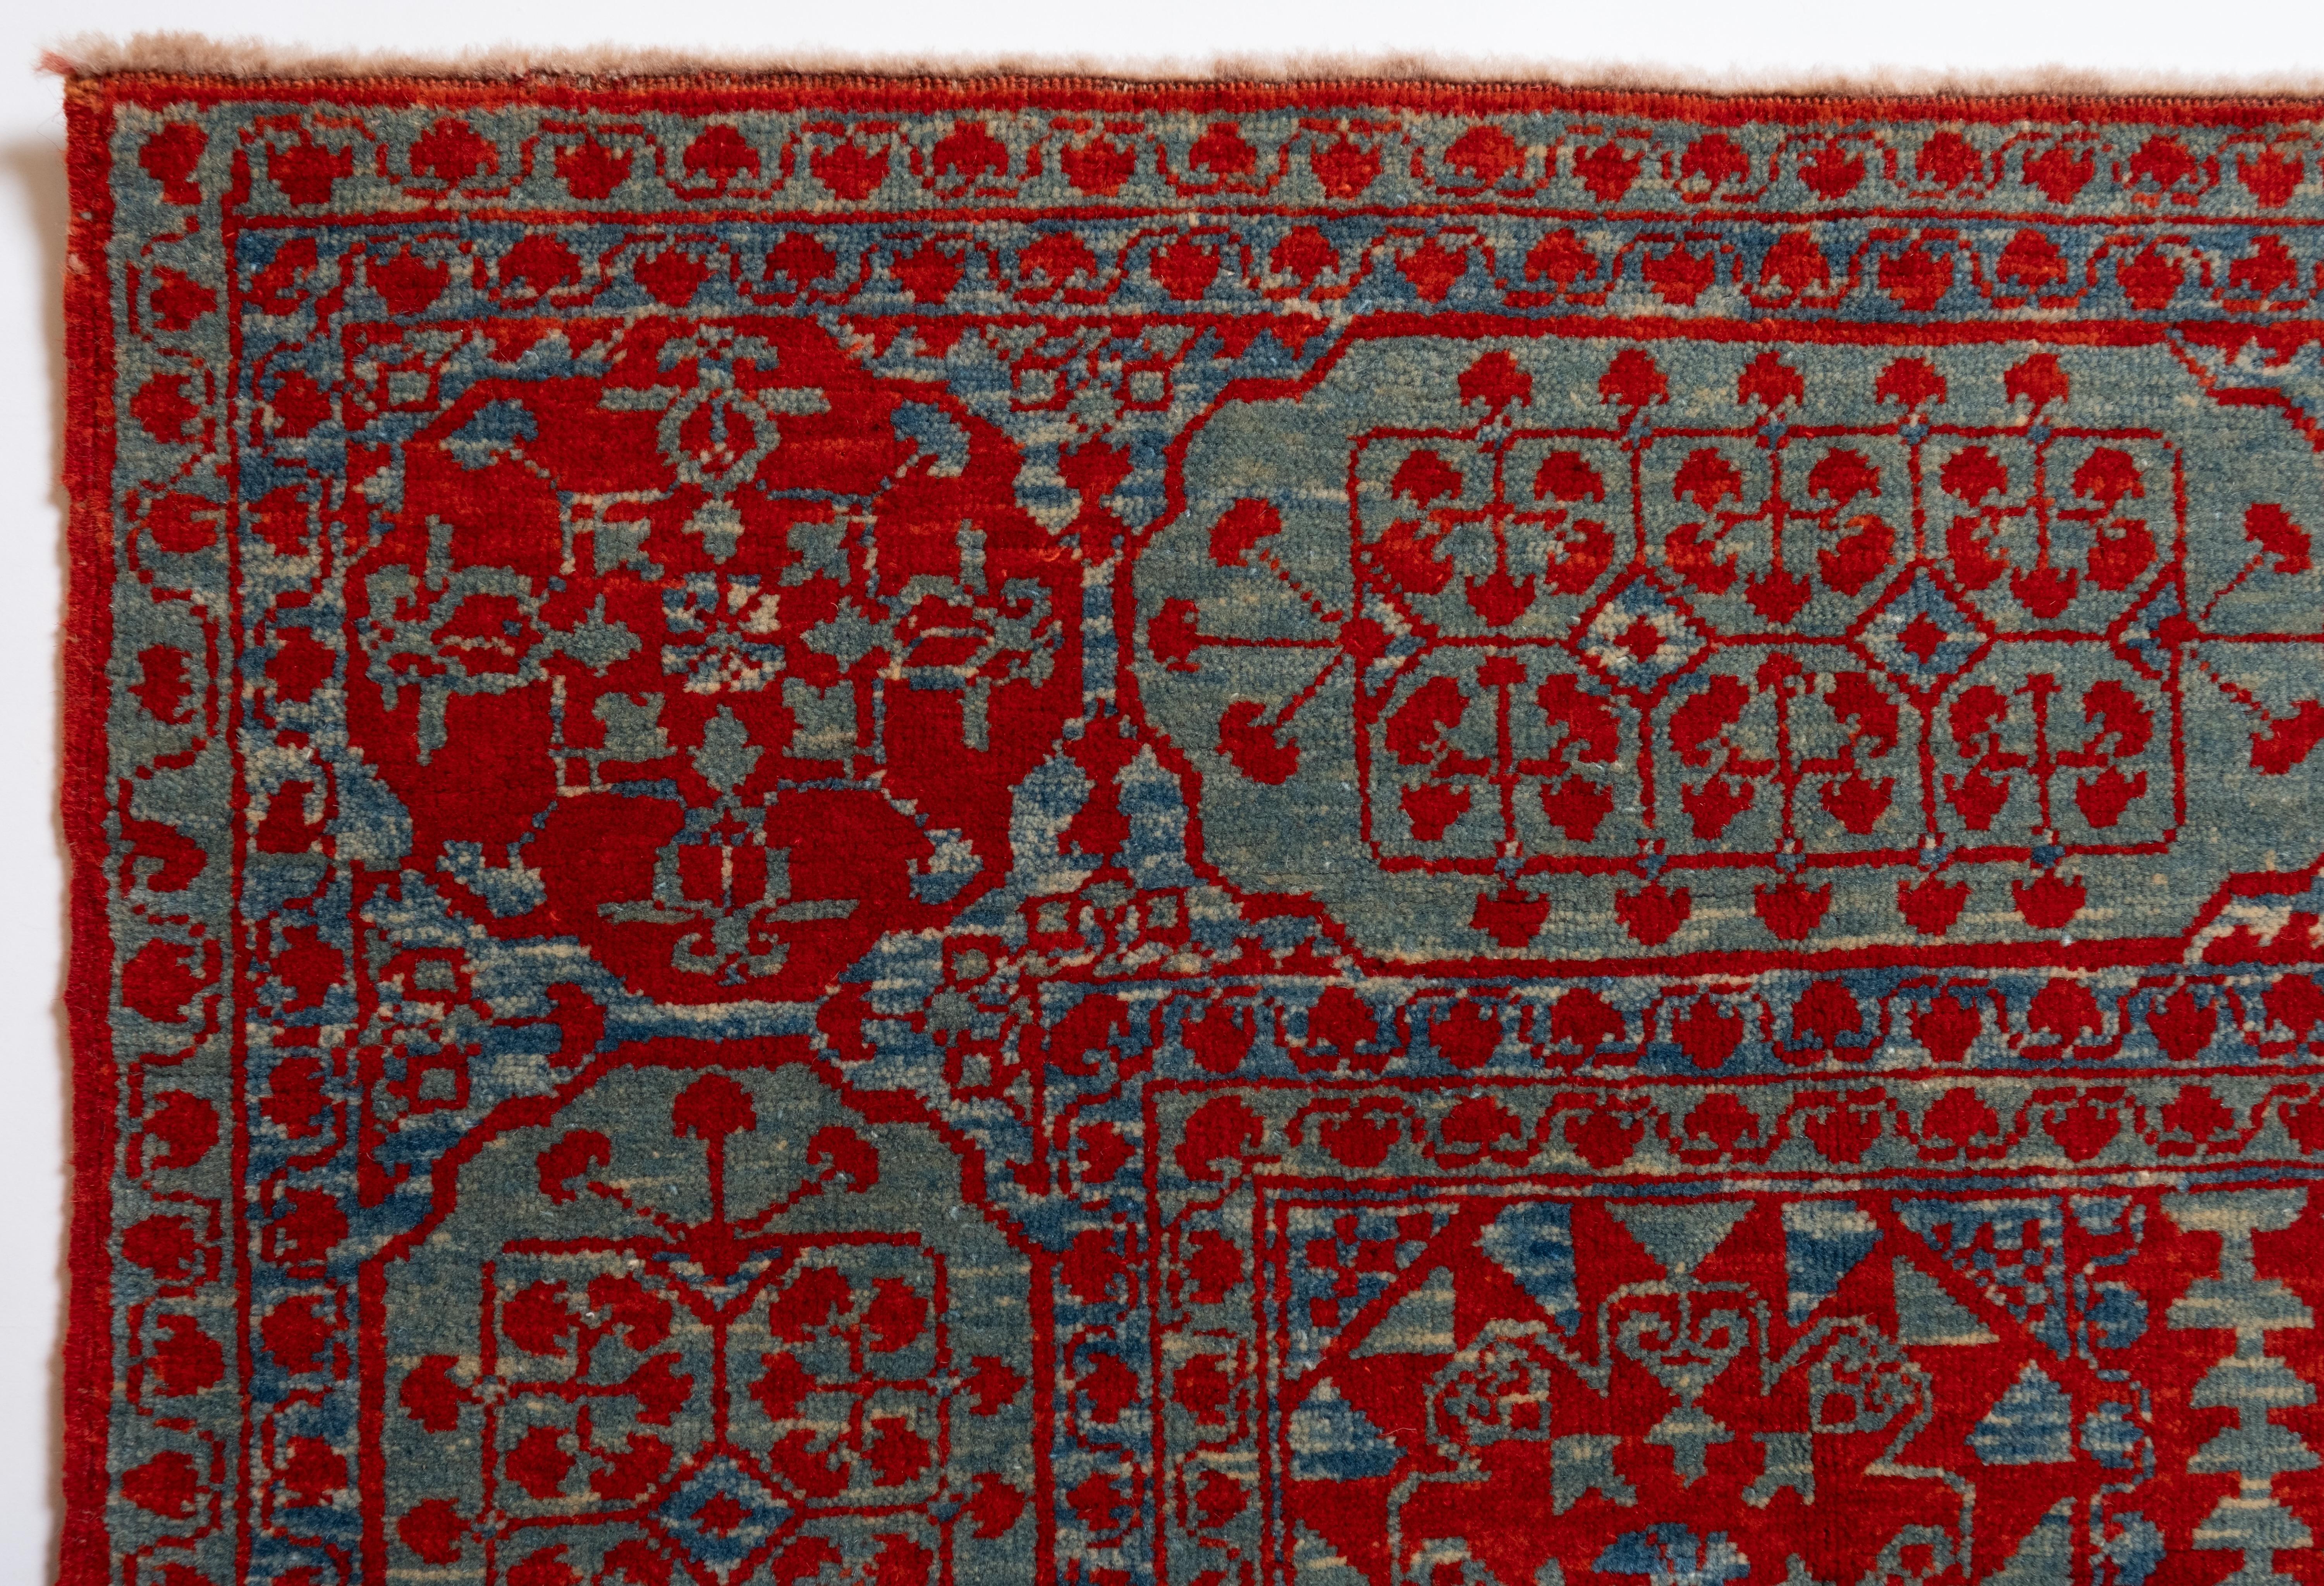 Dieser Teppich mit dem zentralen Stern wurde im frühen 16. Jahrhundert von Mamluken-Sultanen in Kairo, Ägypten, entworfen. Der Versuch, frühe Teppiche zu lesen, die in Kairoer Werkstätten hergestellt wurden, stellt eine ganz andere Herausforderung